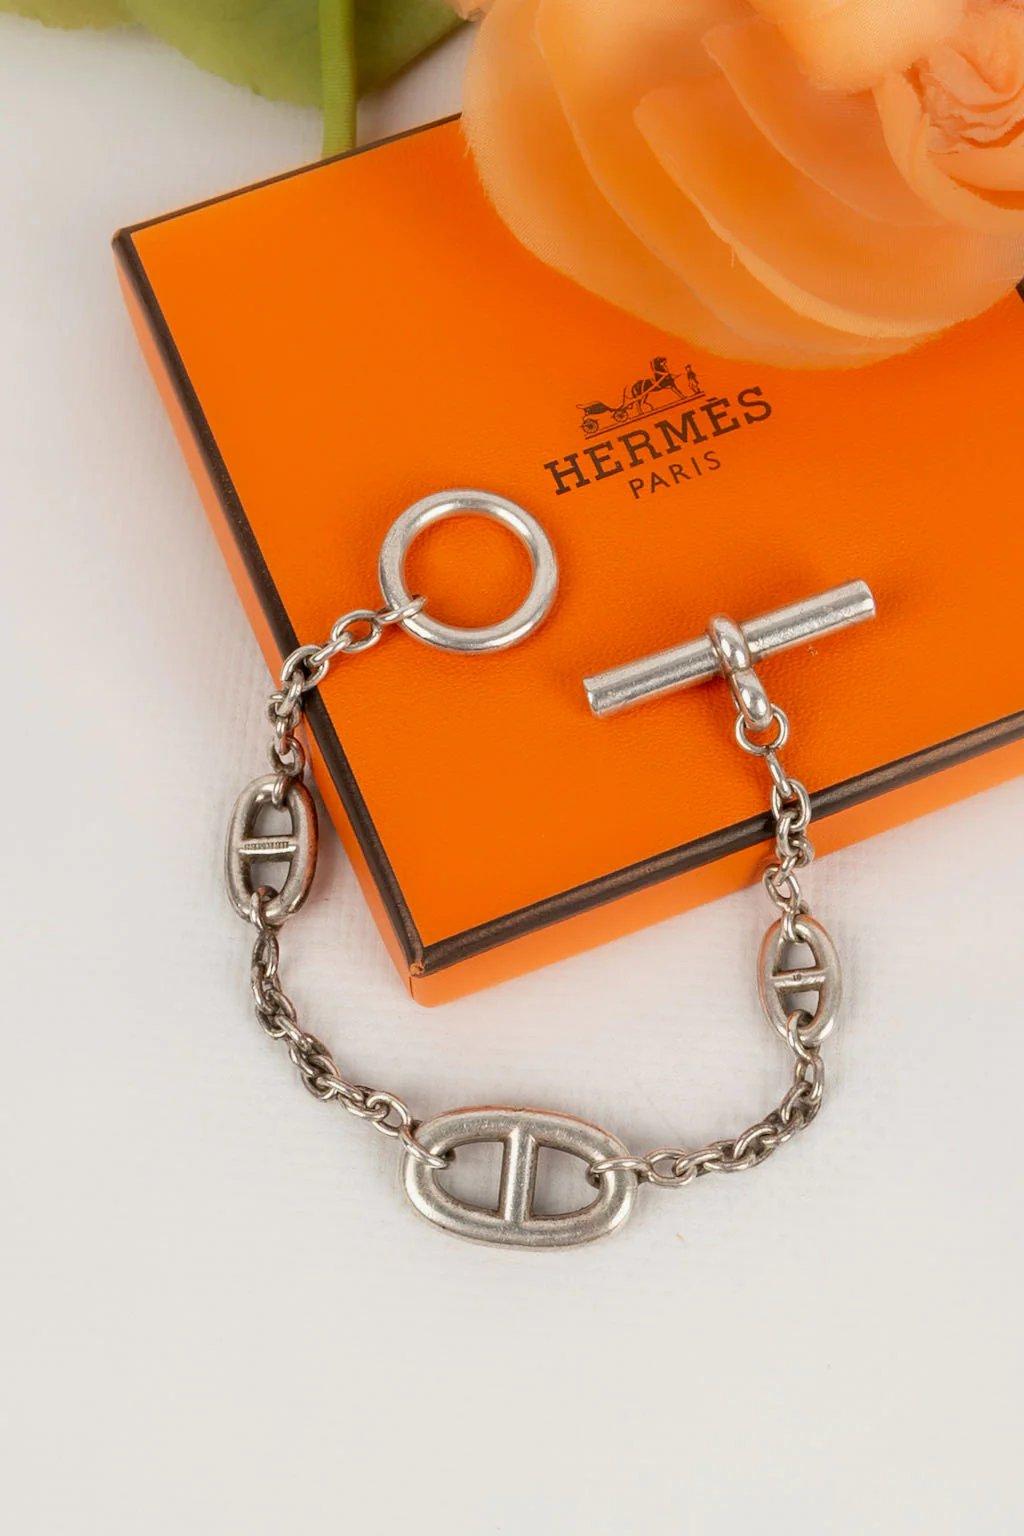 Hermes -(Made in France) Silberarmband Farandole Modell.

Zusätzliche Informationen:

Abmessungen: 
Länge: 18 cm

Zustand: Sehr guter Zustand

Verkäufer-Referenznummer: BRA32